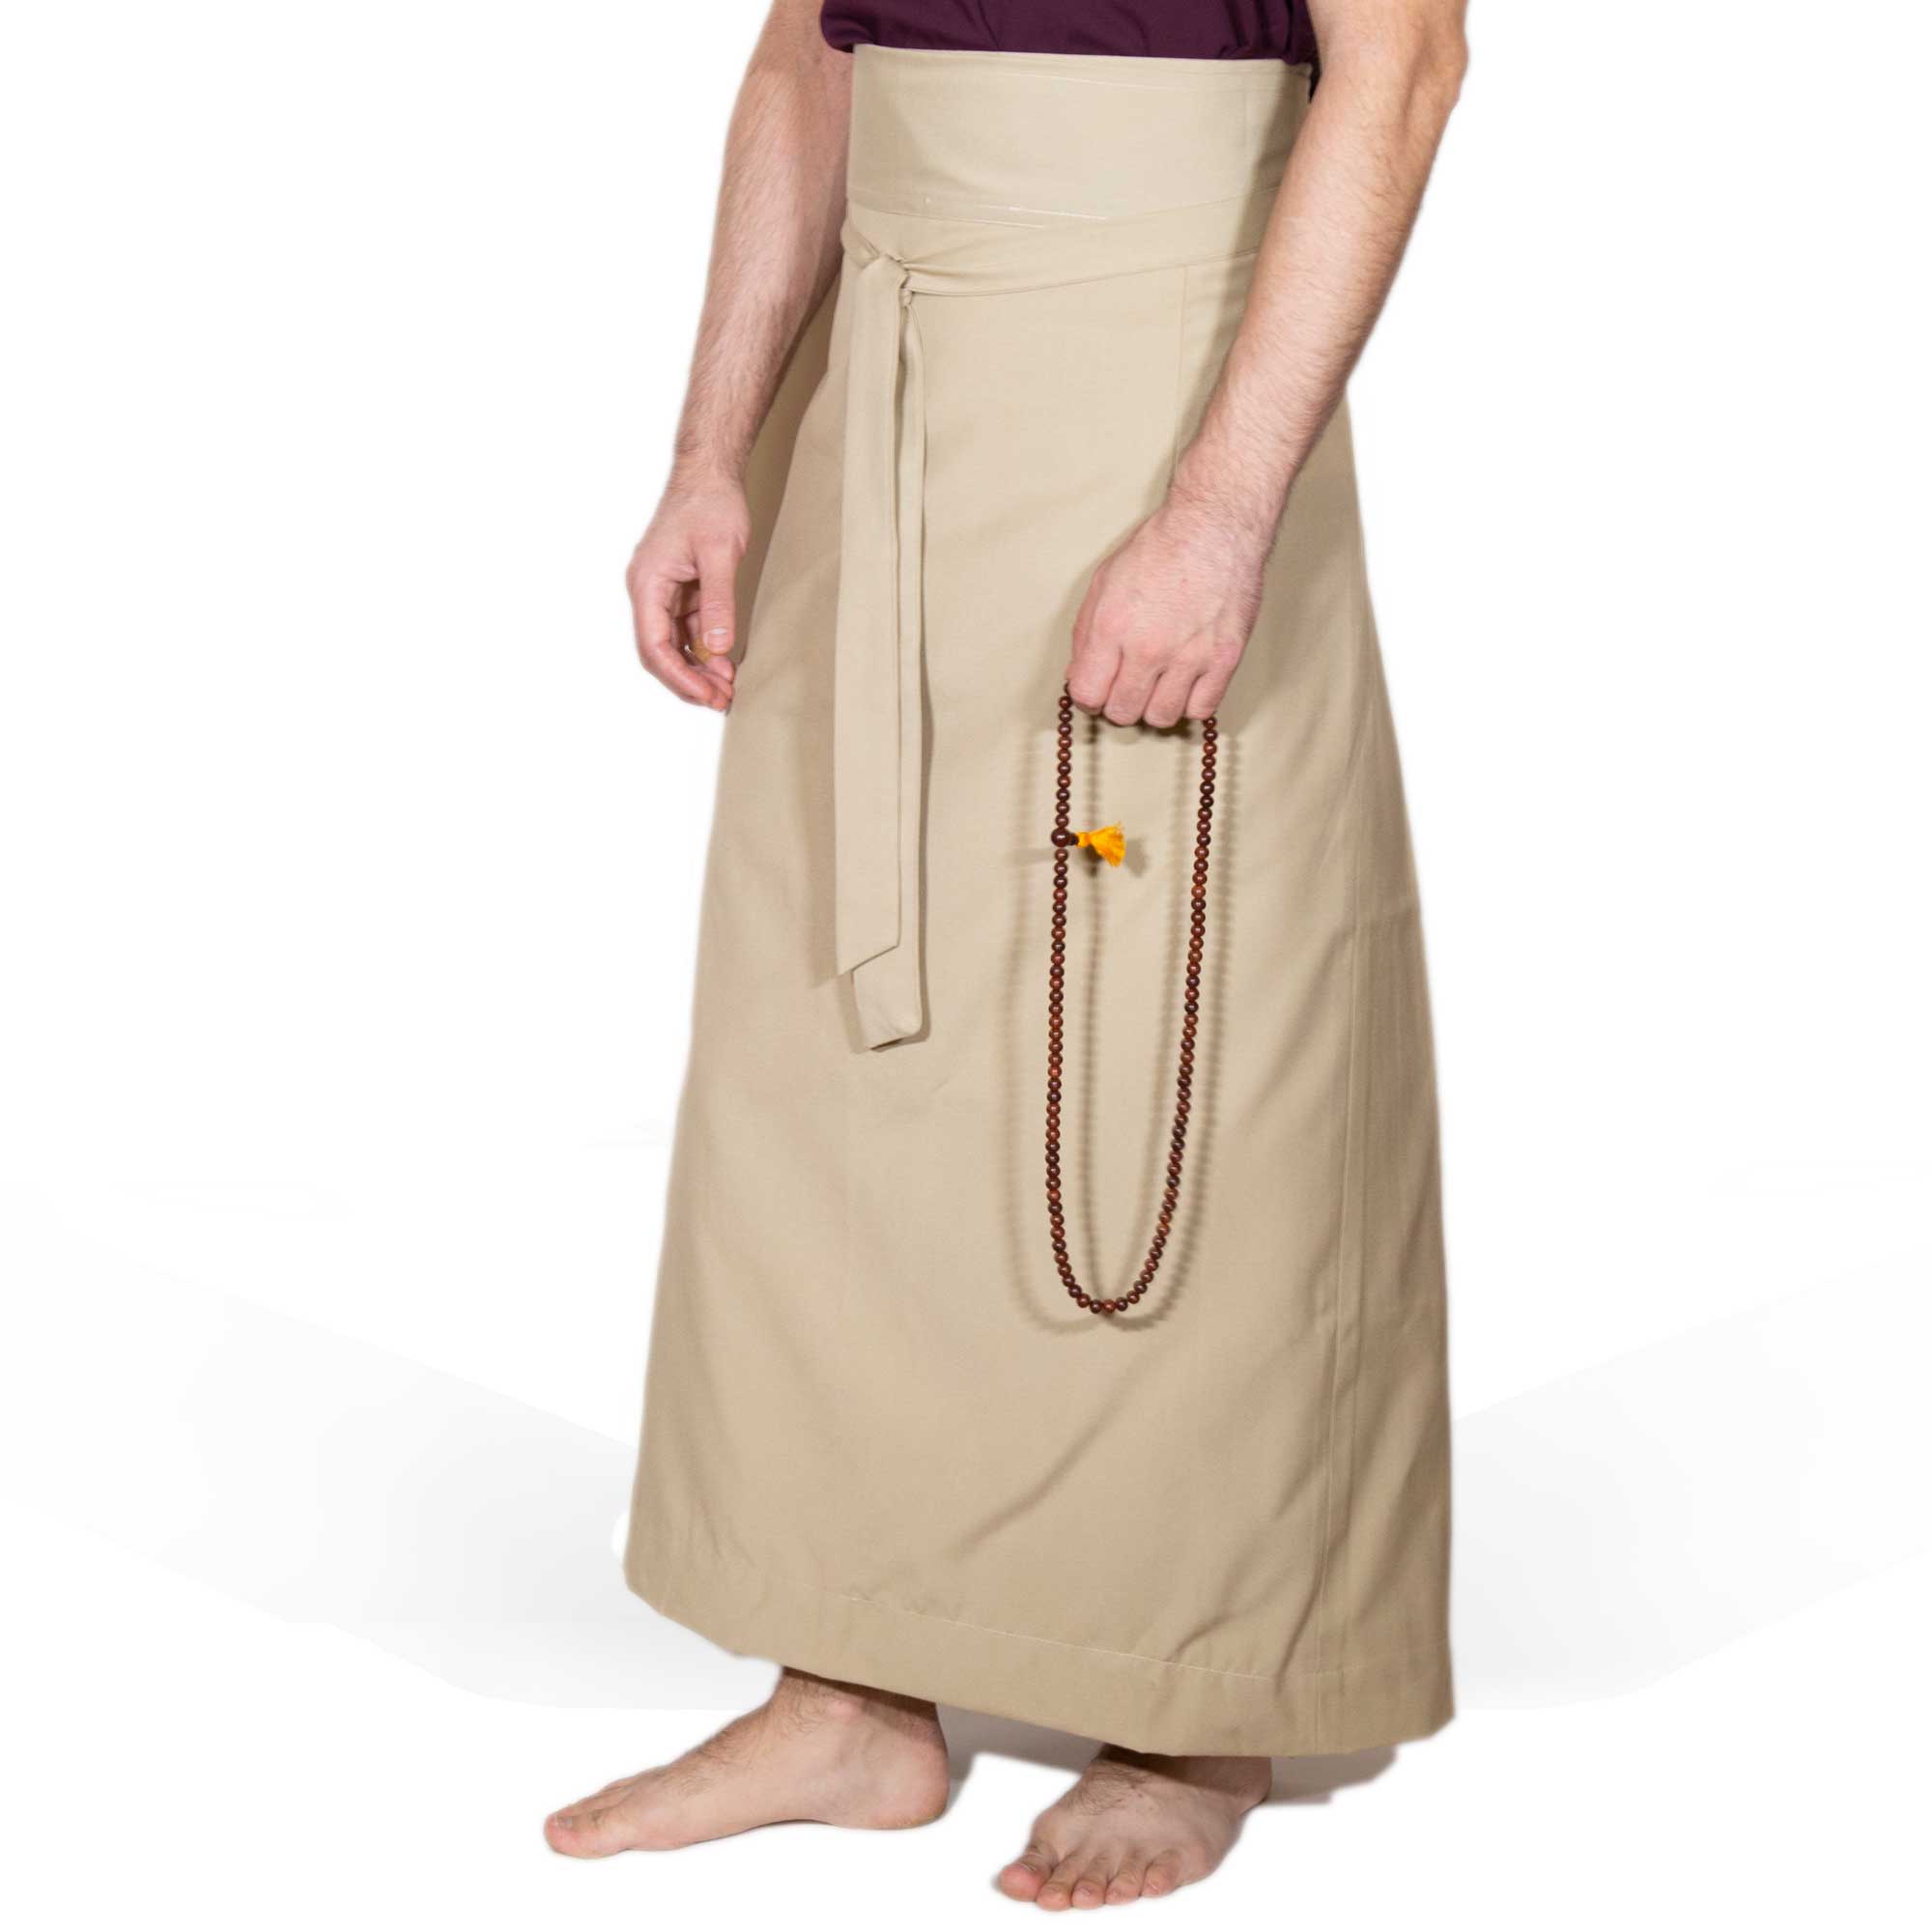 Wraparound Chuba Skirt - Khaki - XL - Imperfect